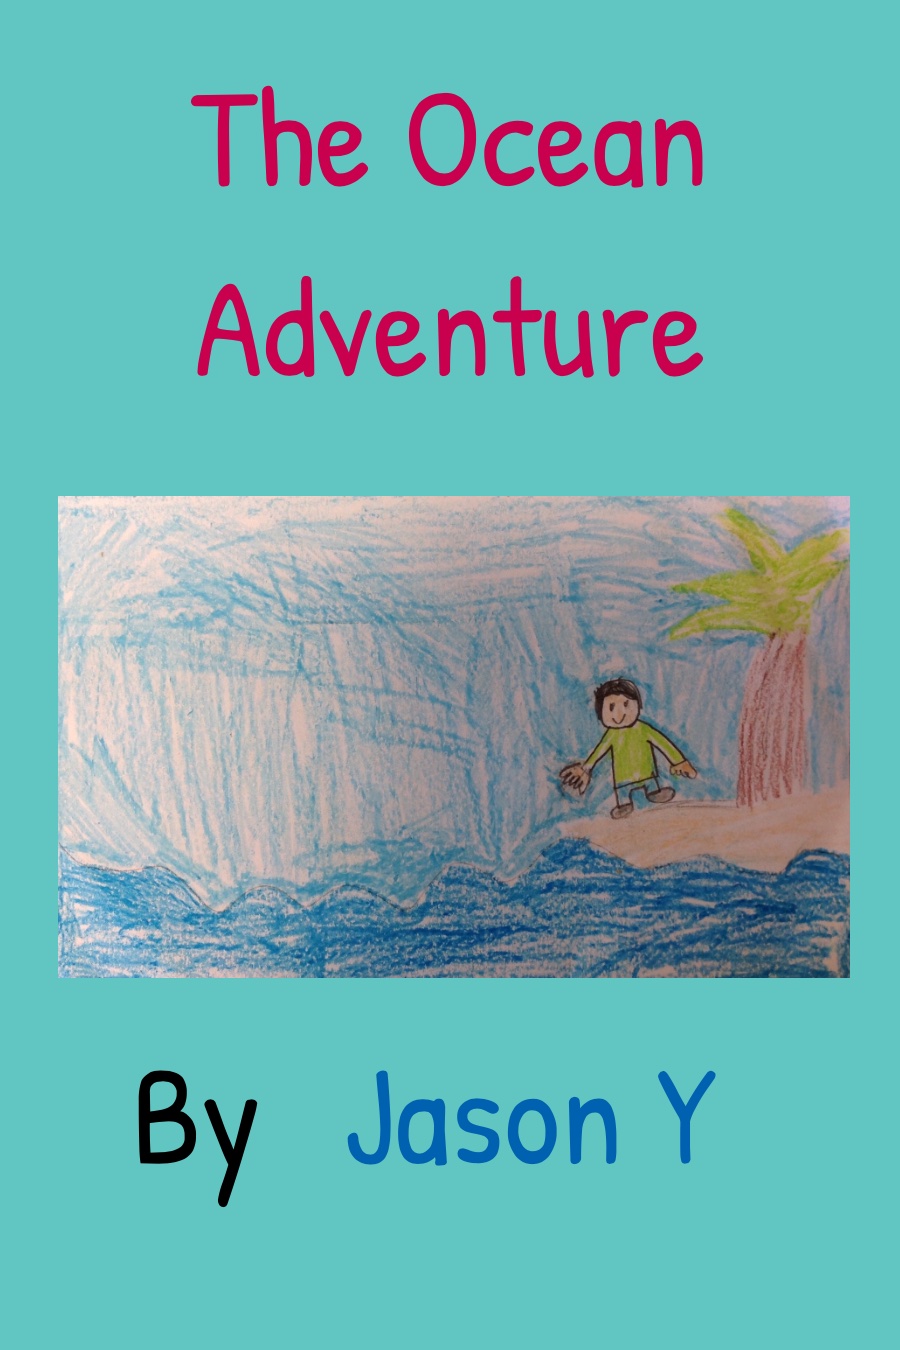 The Ocean Adventure by Jason Y